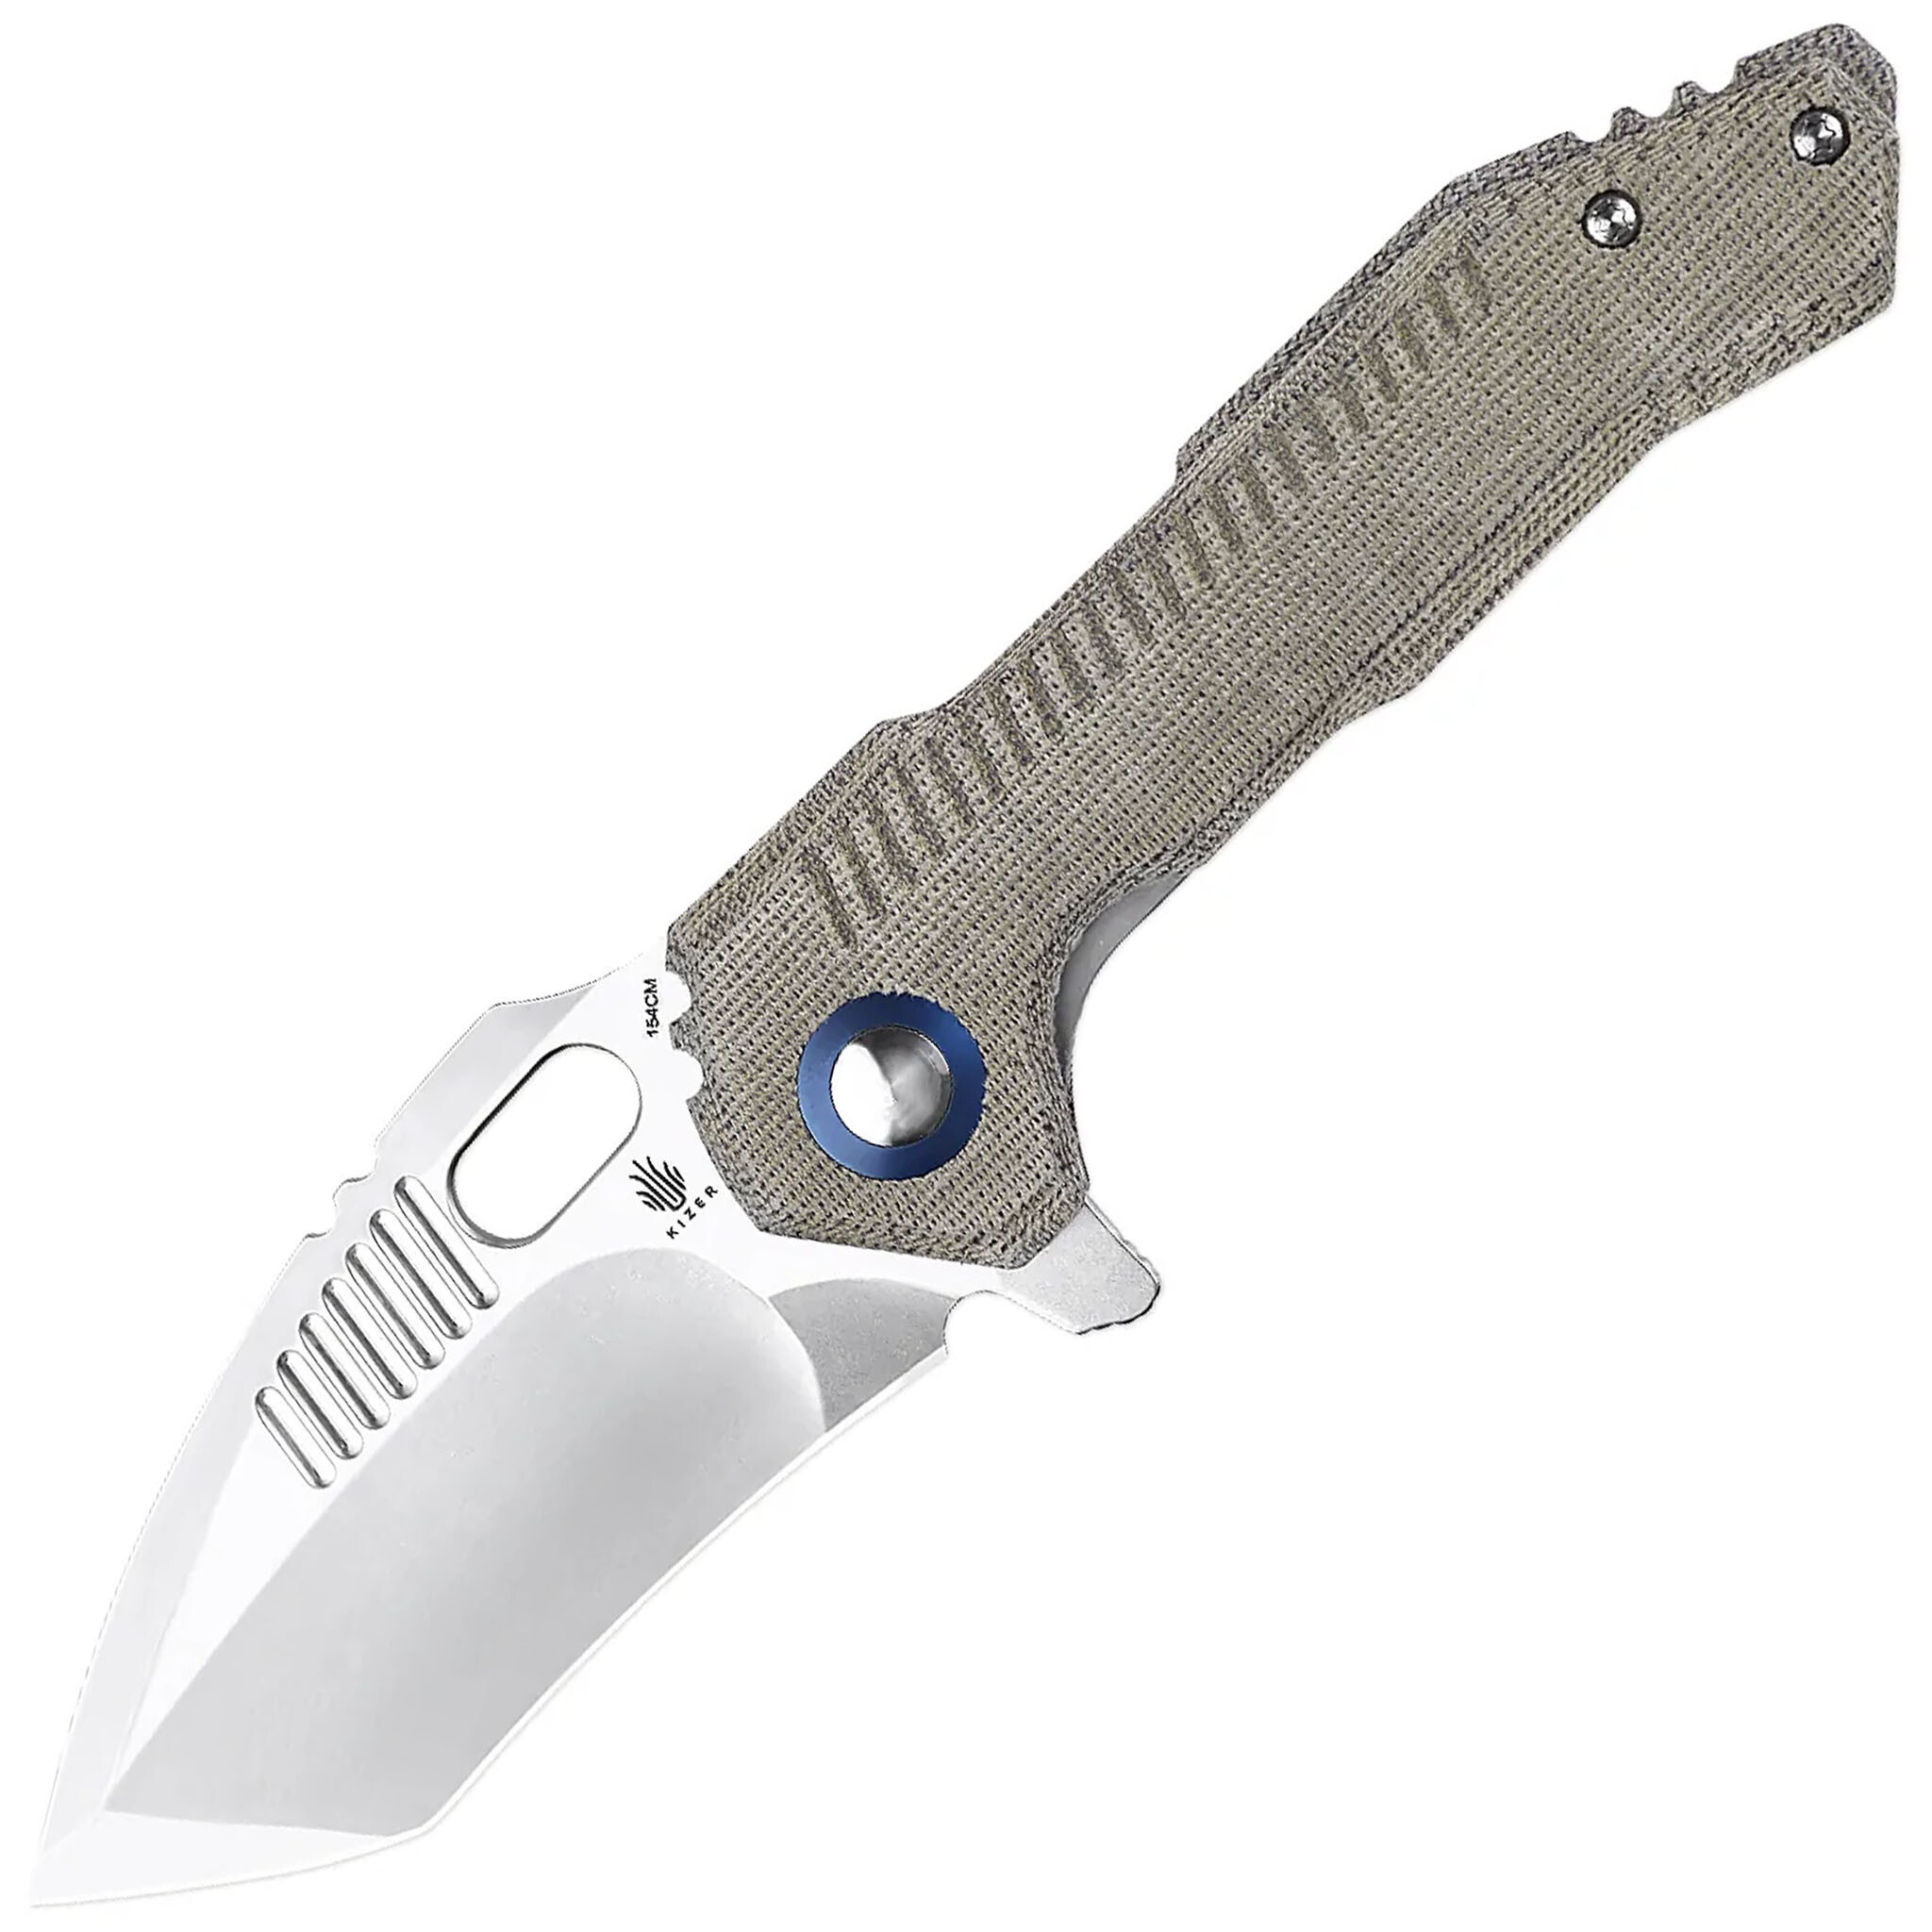 Складной нож Kizer Mini Paragon Satin, сталь 154CM, рукоять микарта полуавтоматический складной нож ontario utilitac assisted клинок satin рукоять g 10